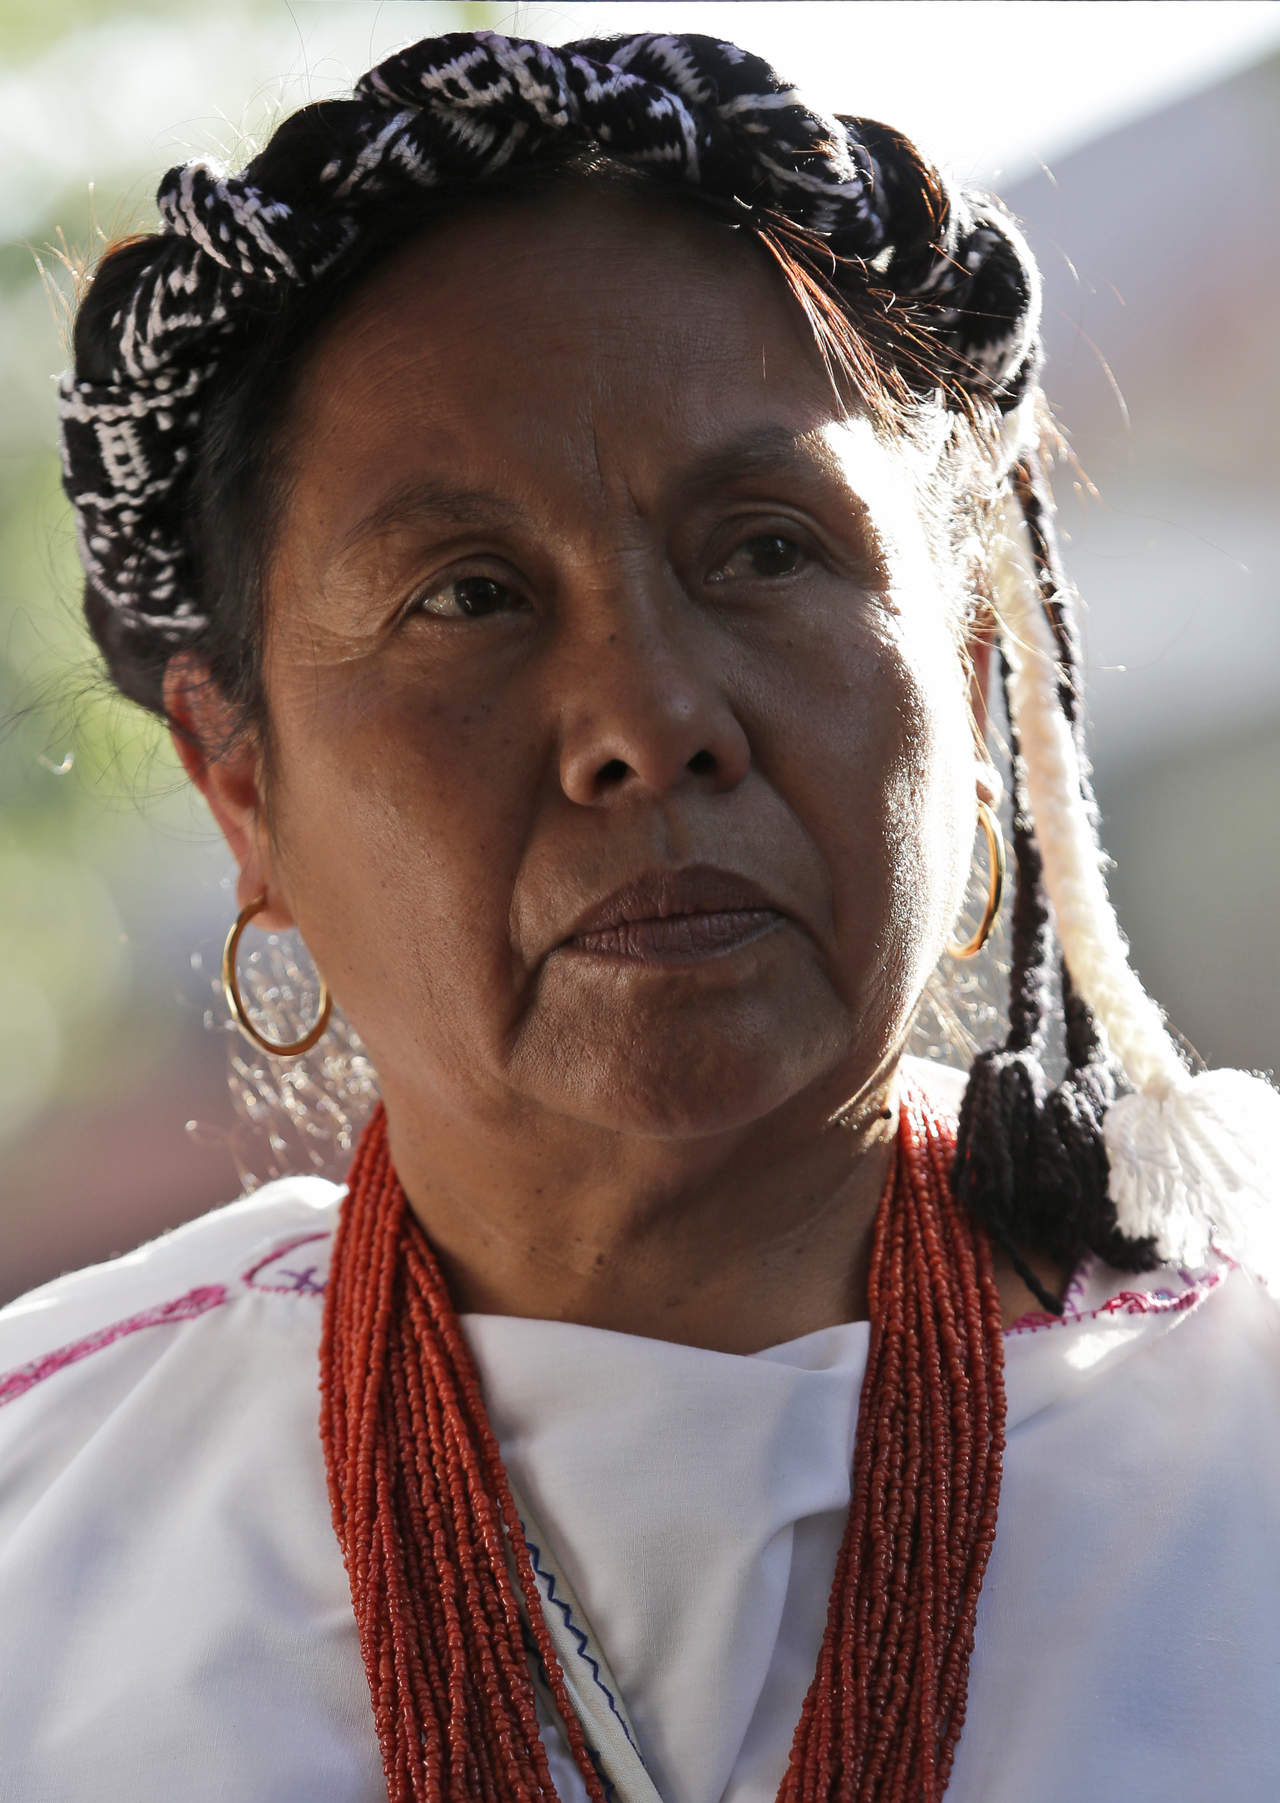 María de Jesús Patricio Martínez, conocida como 'Marichuy', vocera del Concejo Indígena de Gobierno (CIG) y precandidata a la Presidencia de la República para 2018. (AP)